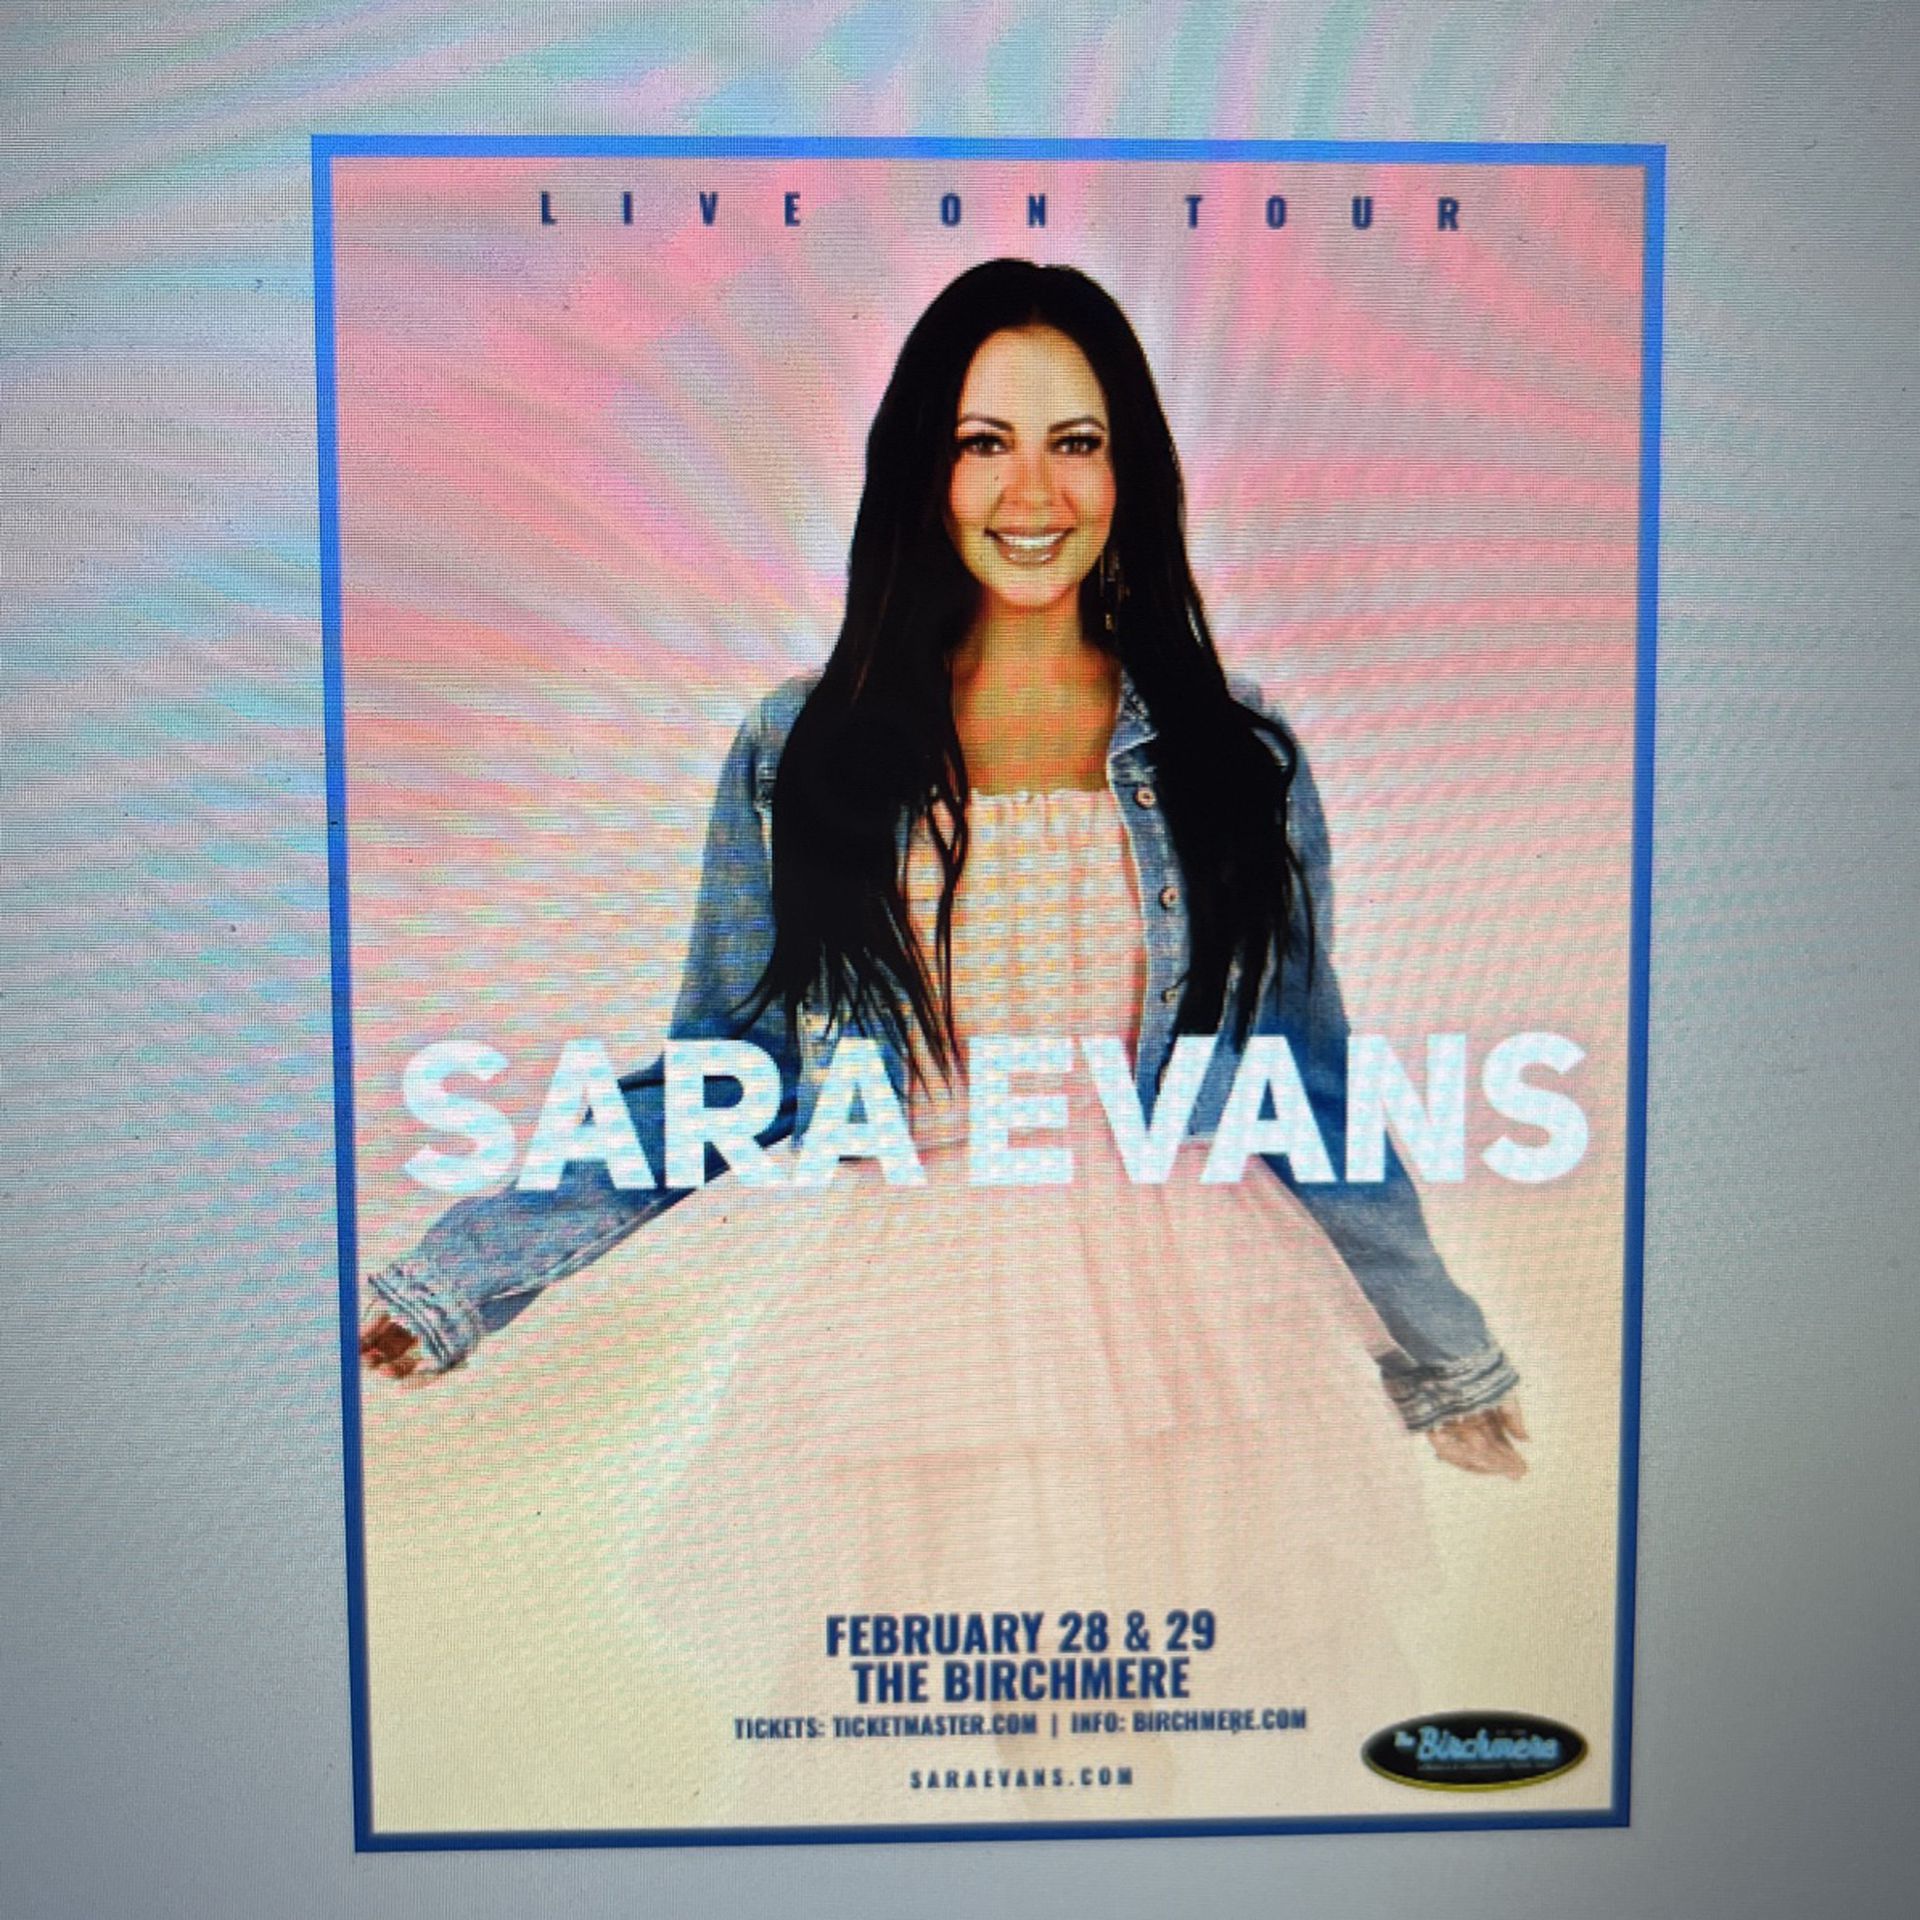 Sara Evans Concert Tickets 